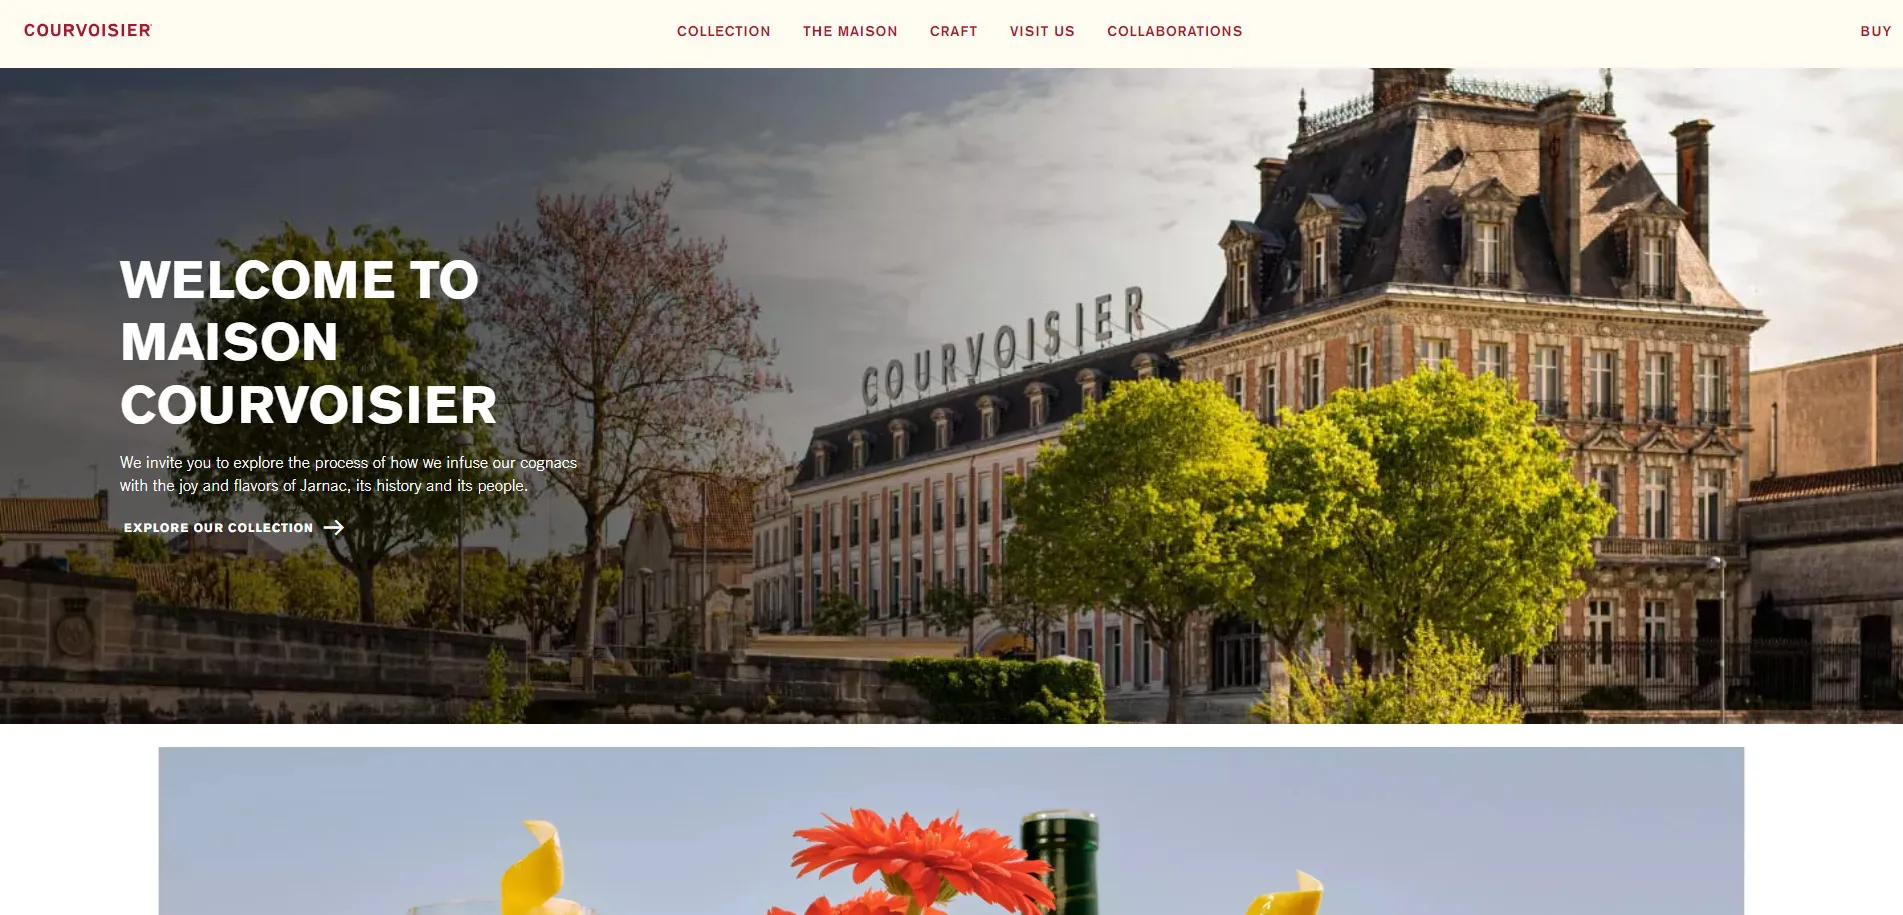 Courvoisier website homepage